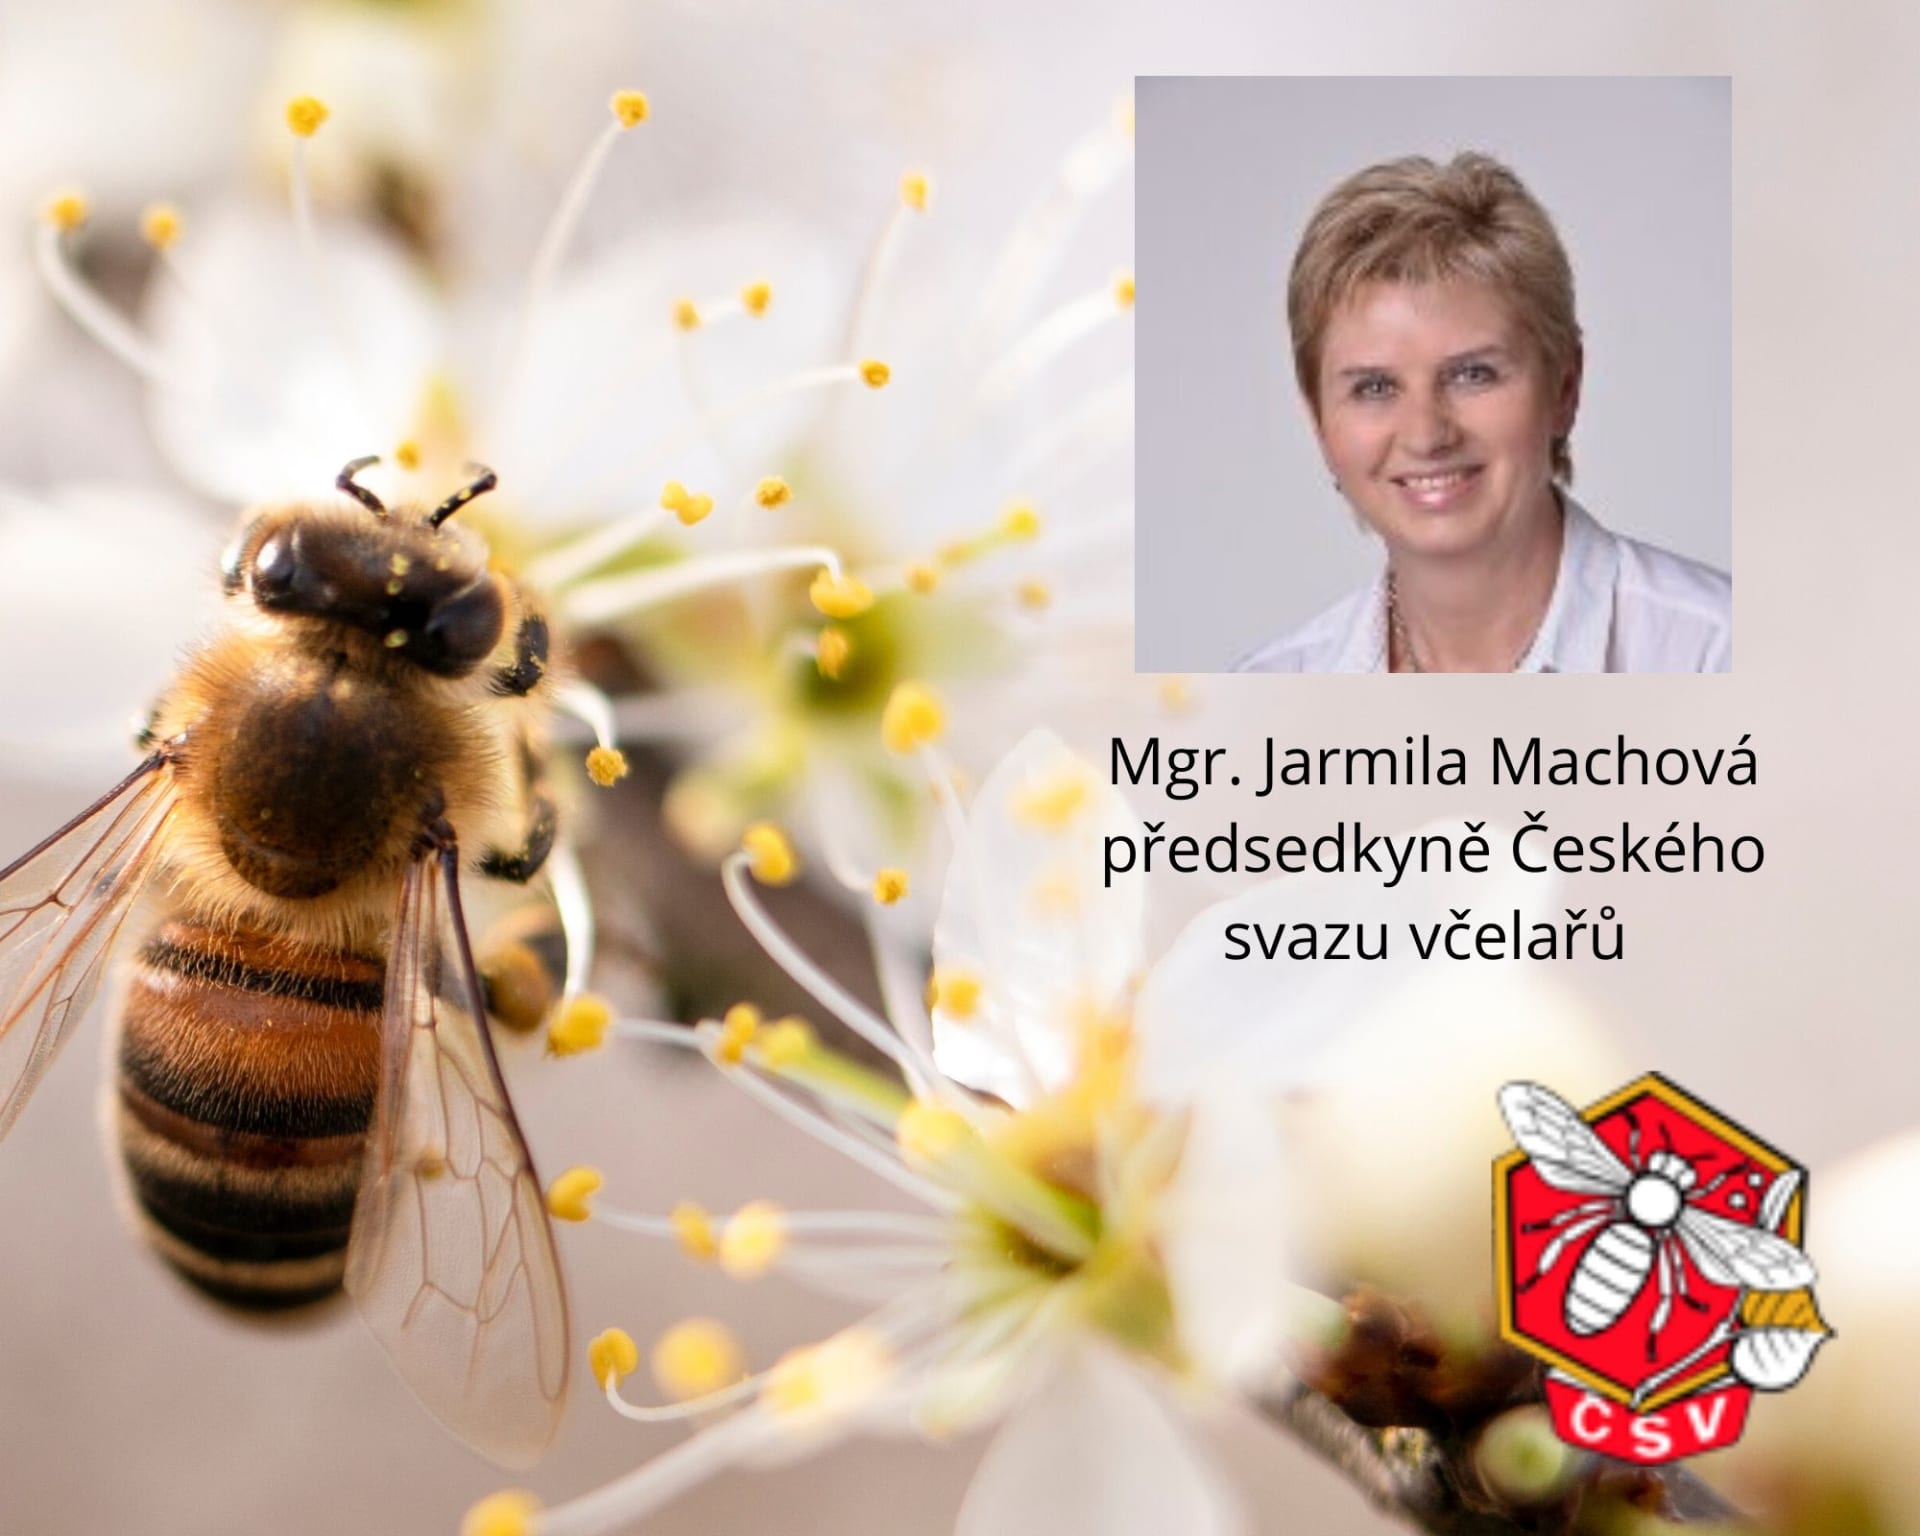 Jarmila Machová předsedkyně Českého svazu včelařů